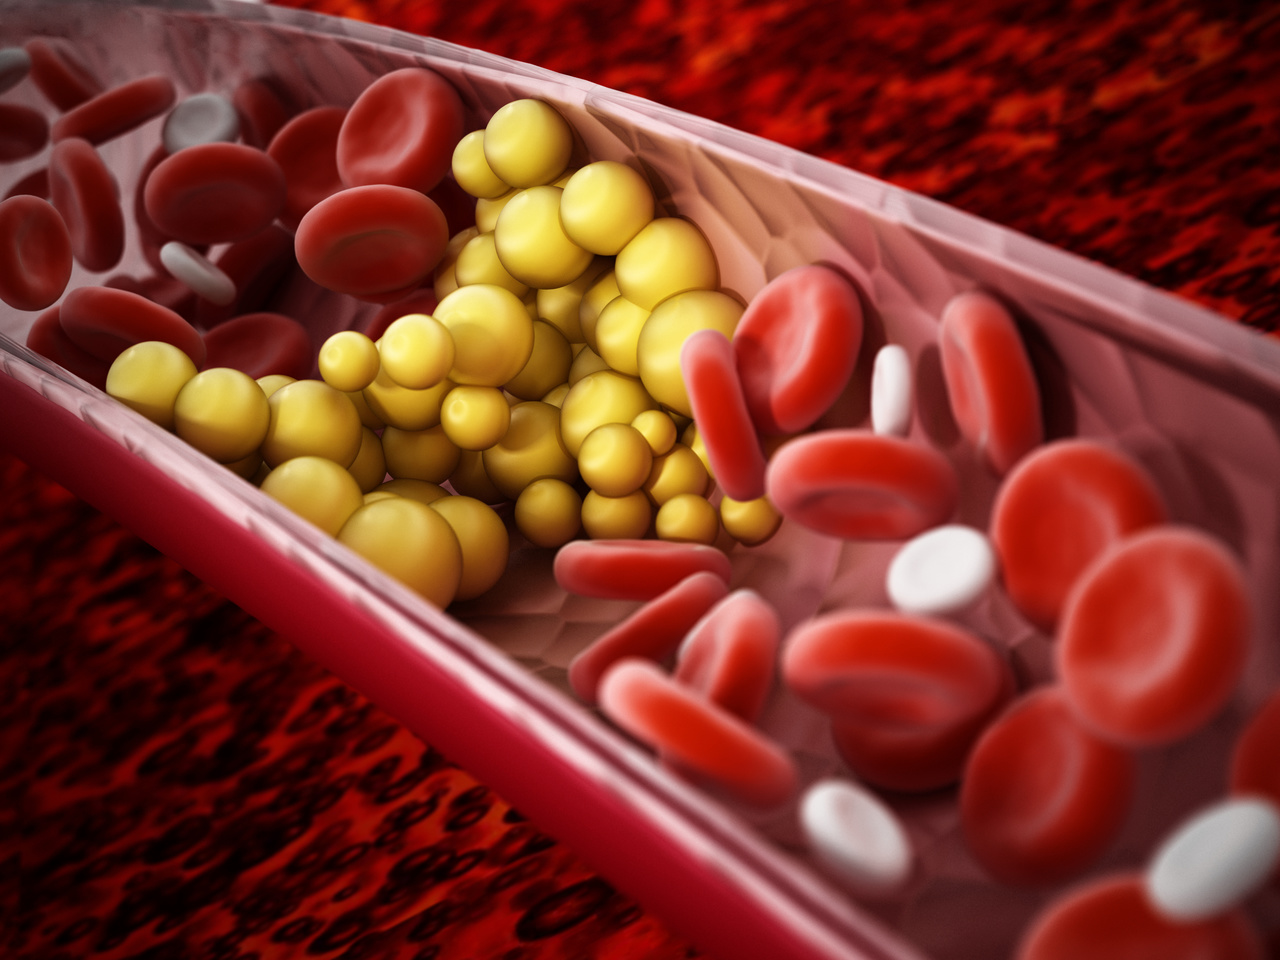 La mitad de la población adulta padece ya hipercolesterolemia: Colesterol I